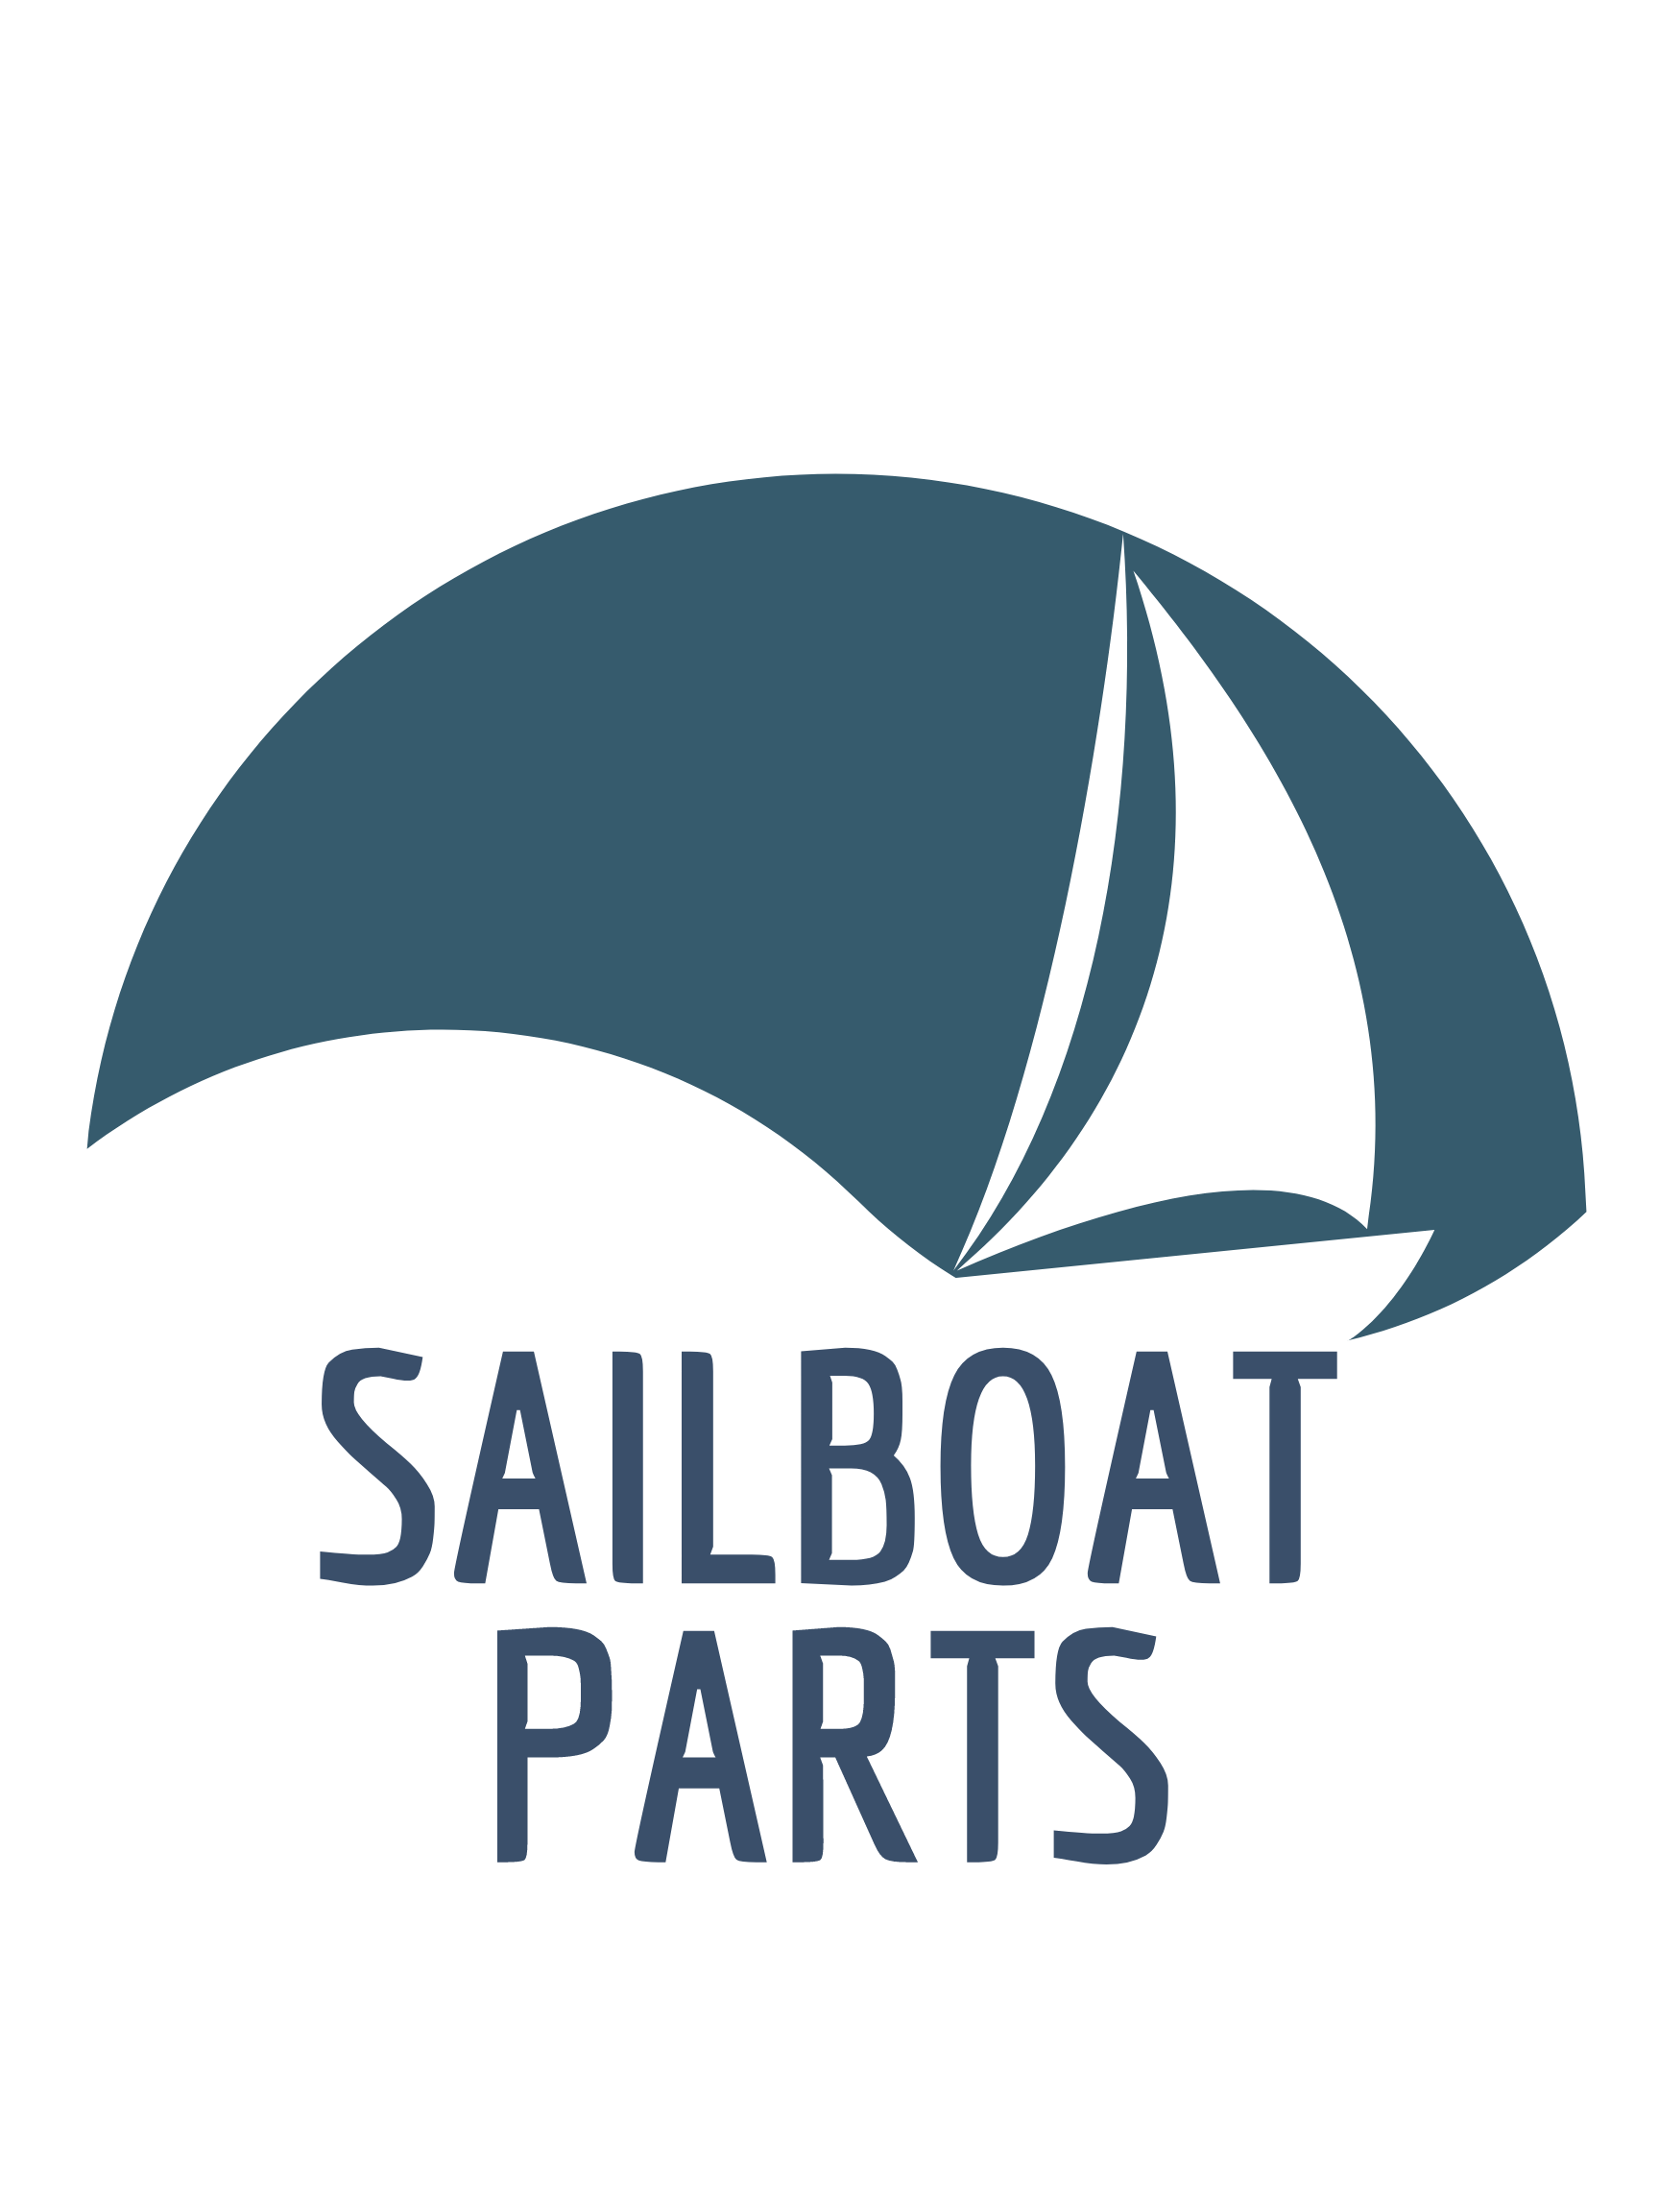 http://www.sailboatparts.com/cdn/shop/files/SAILBOAT_9_4ea7e626-a5d3-4920-aa84-a373a237b763.png?v=1672357971